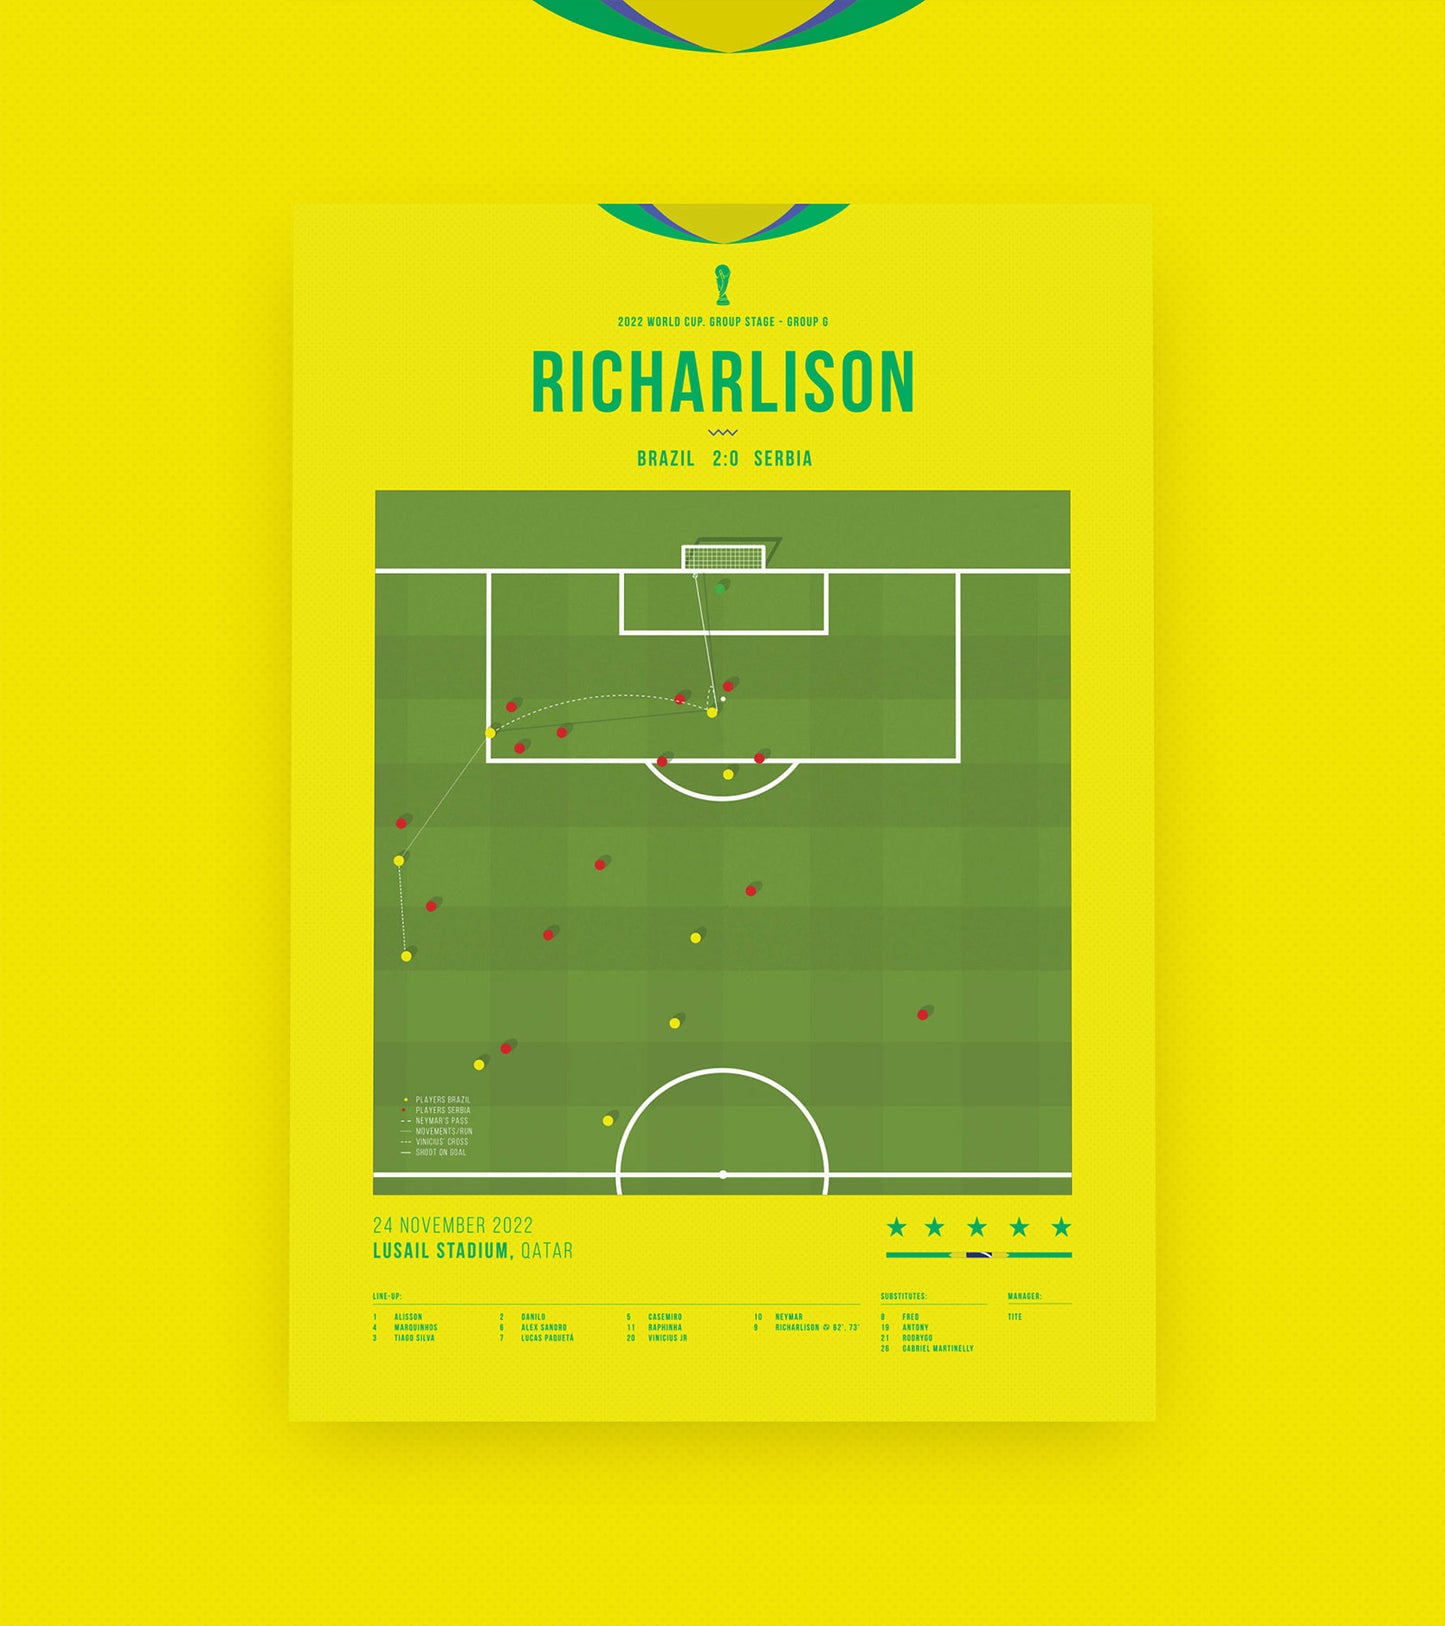 <tc>Richarlison marque un but sensationnel en Coupe du monde sur un coup de pied en ciseaux</tc>